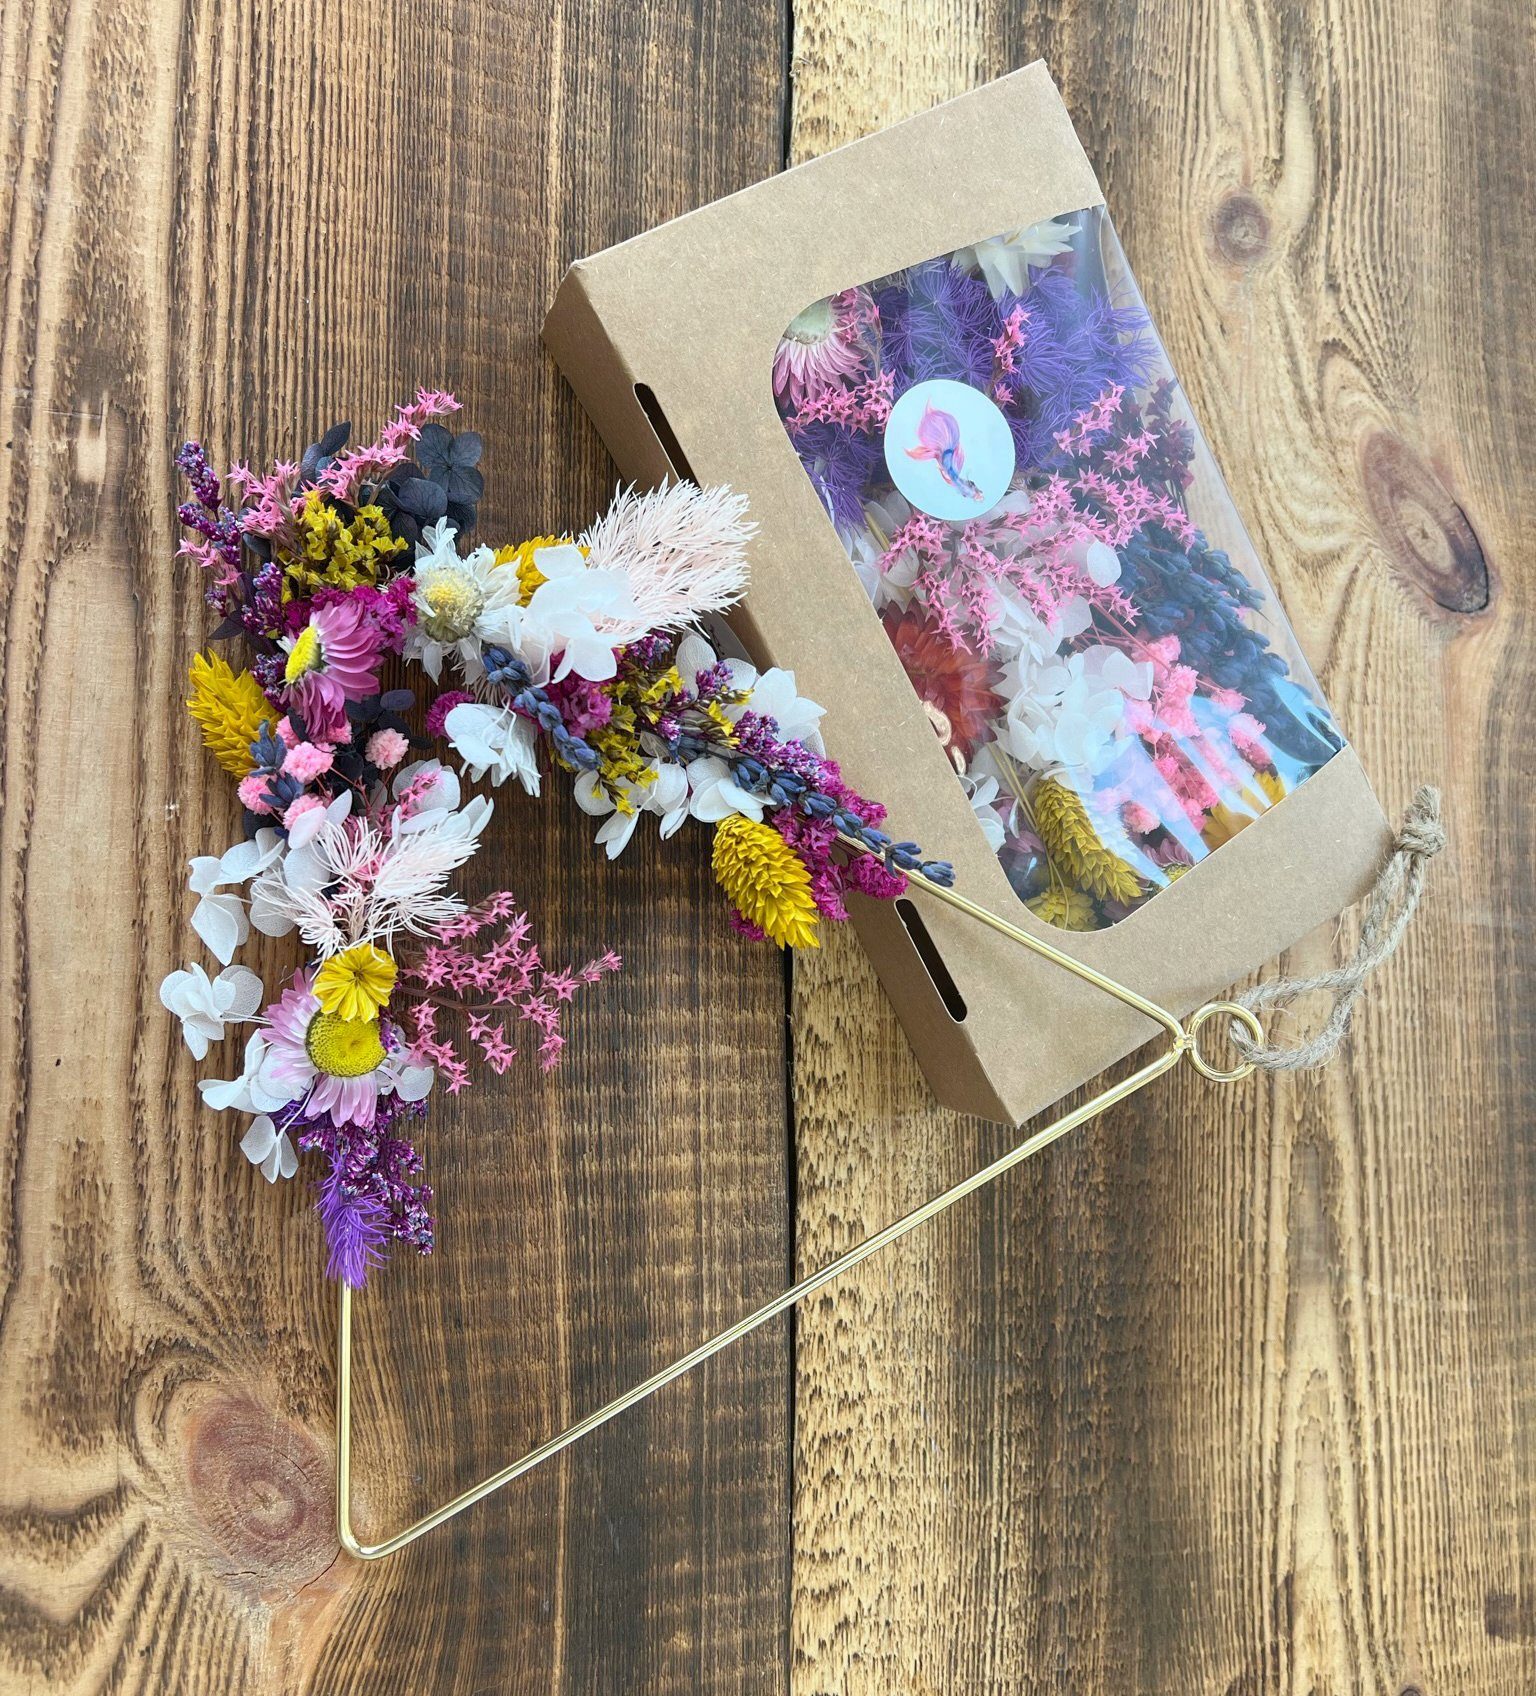 Trockenblume Getrocknete Blüten in frohen Farben Töne, - Kunstharz.Art Pinke